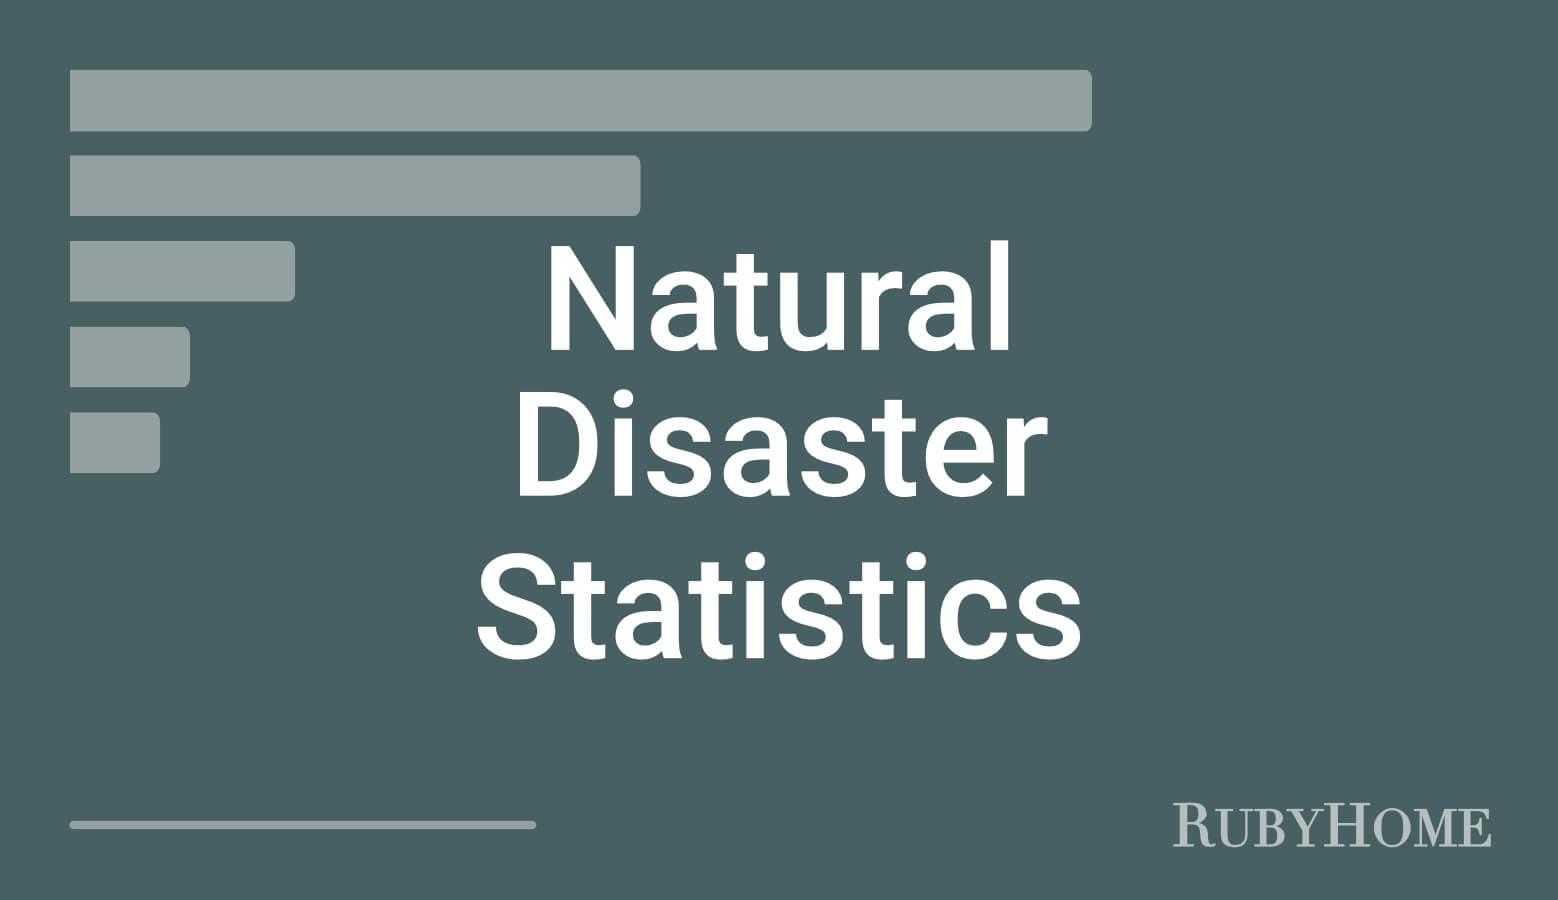 Natural Disaster Statistics